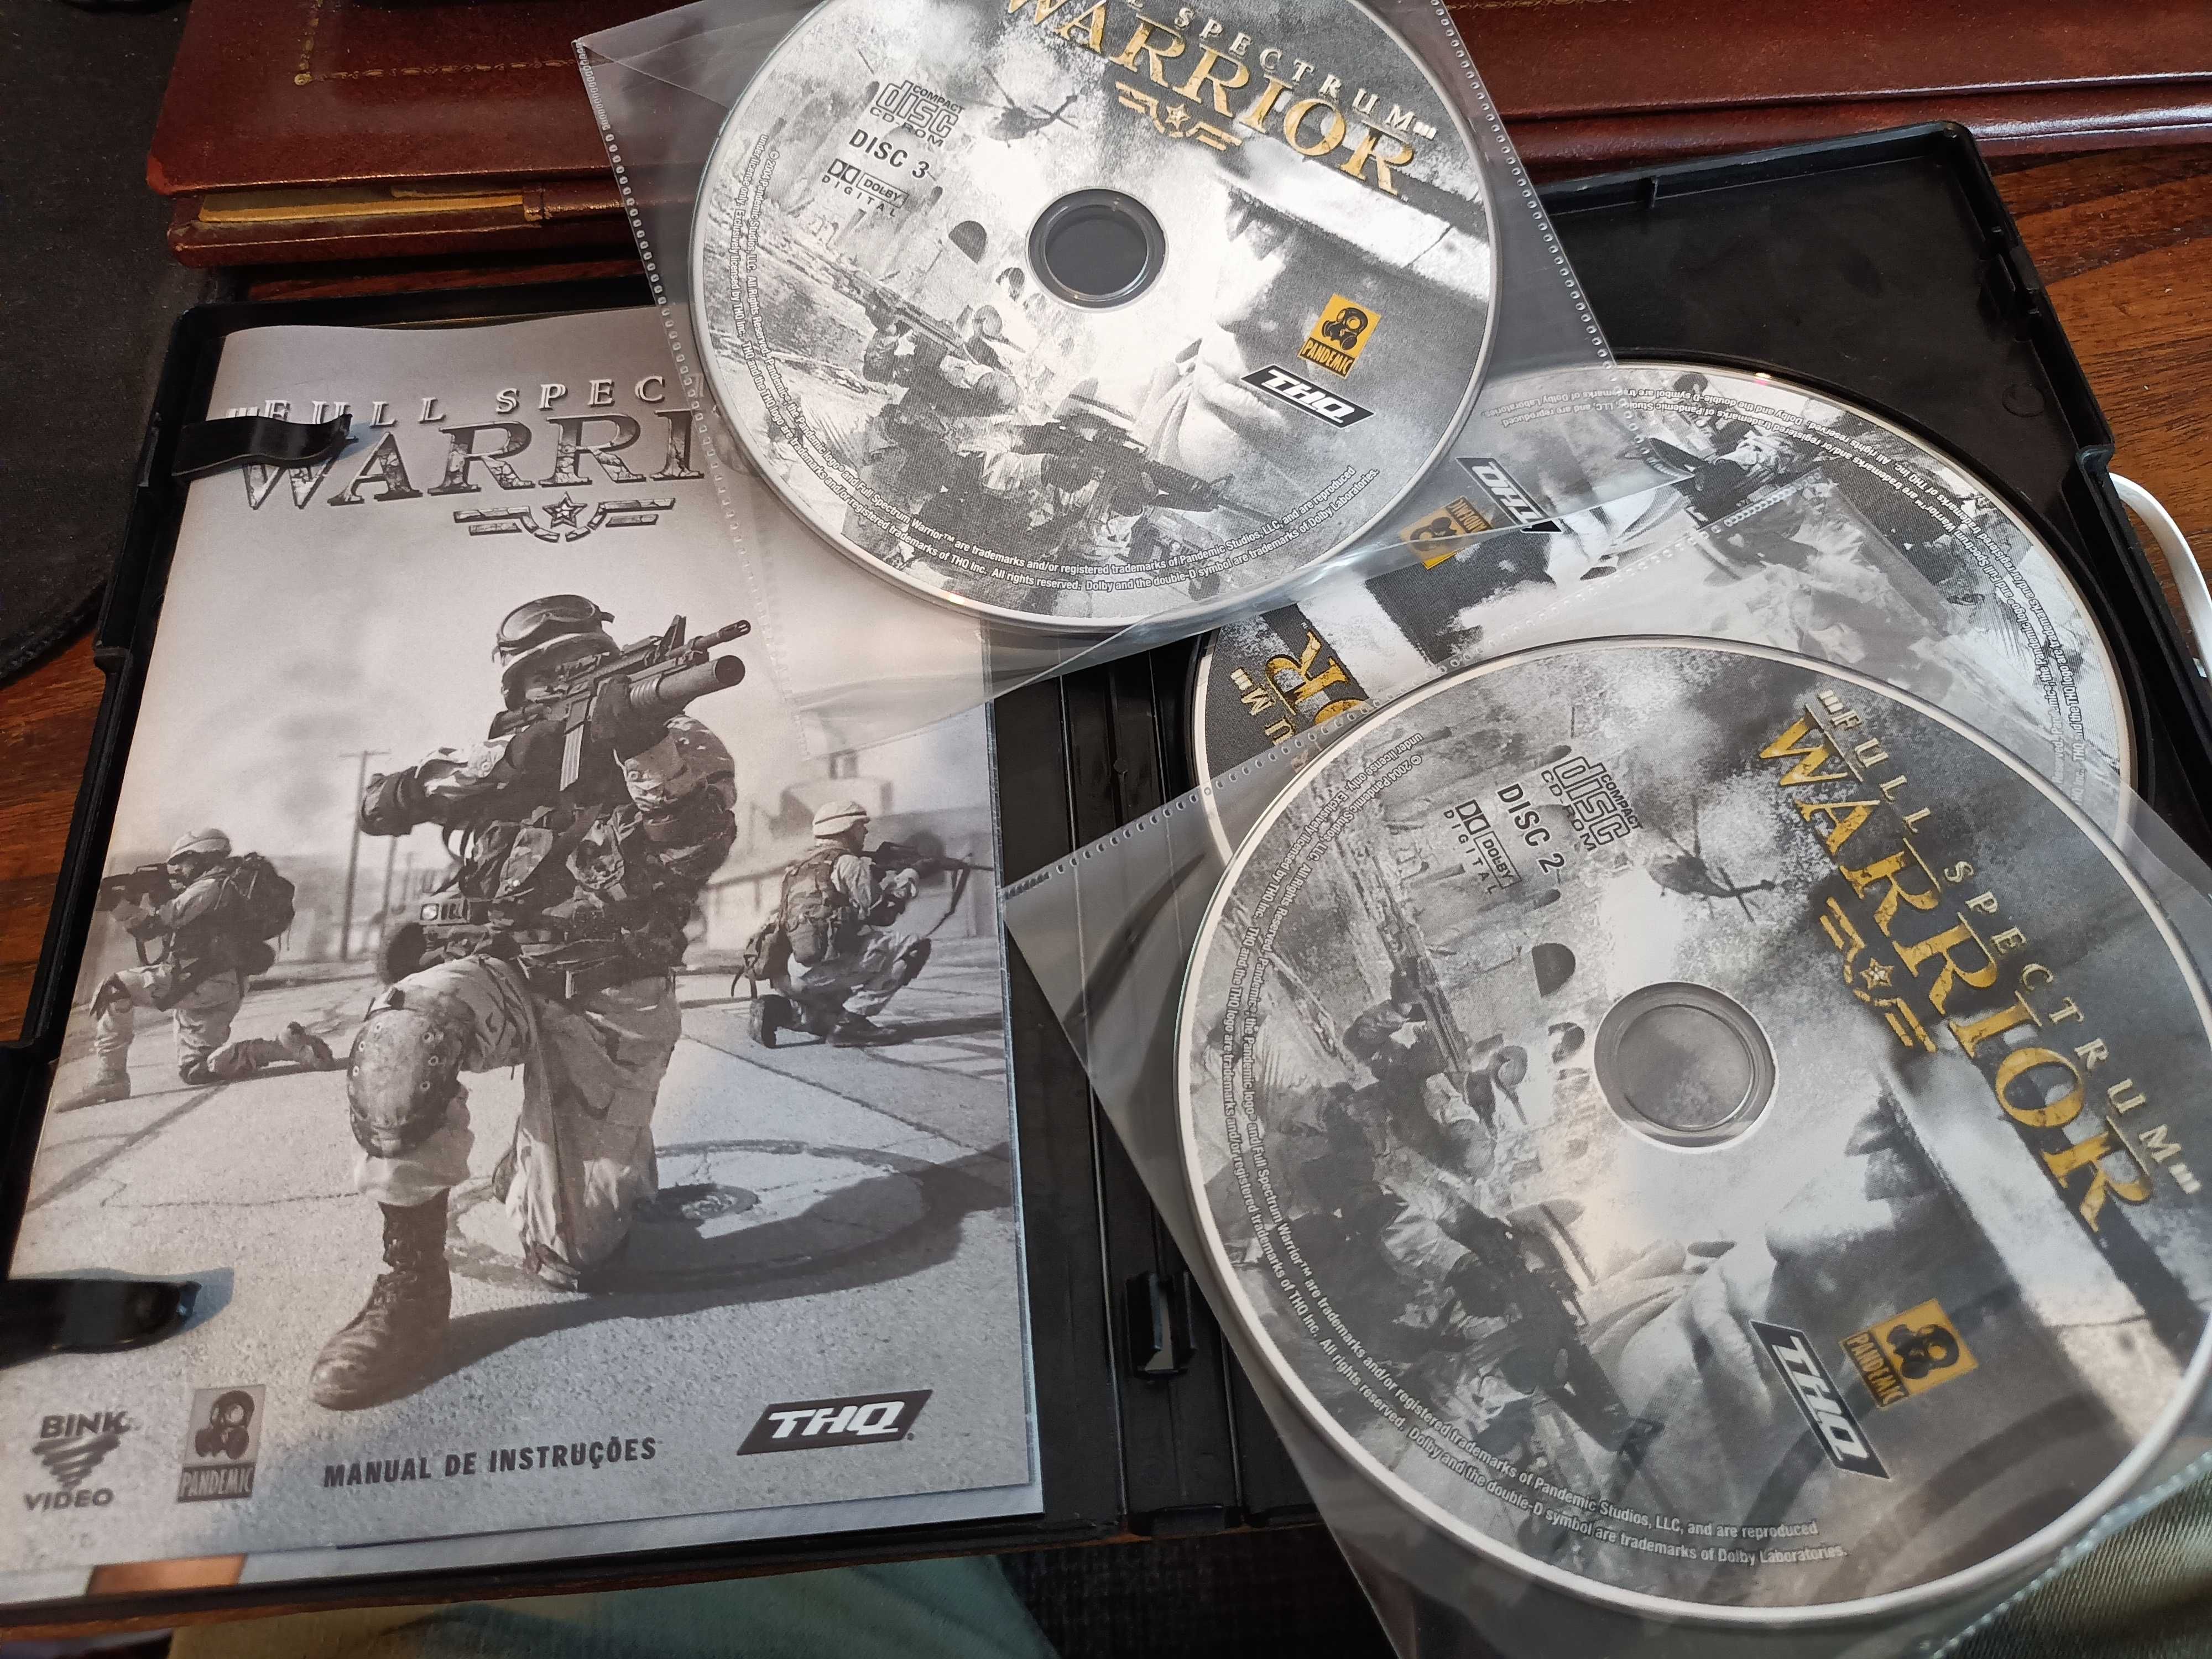 Jogo PC full Spectrum warrior completo com 3 CD